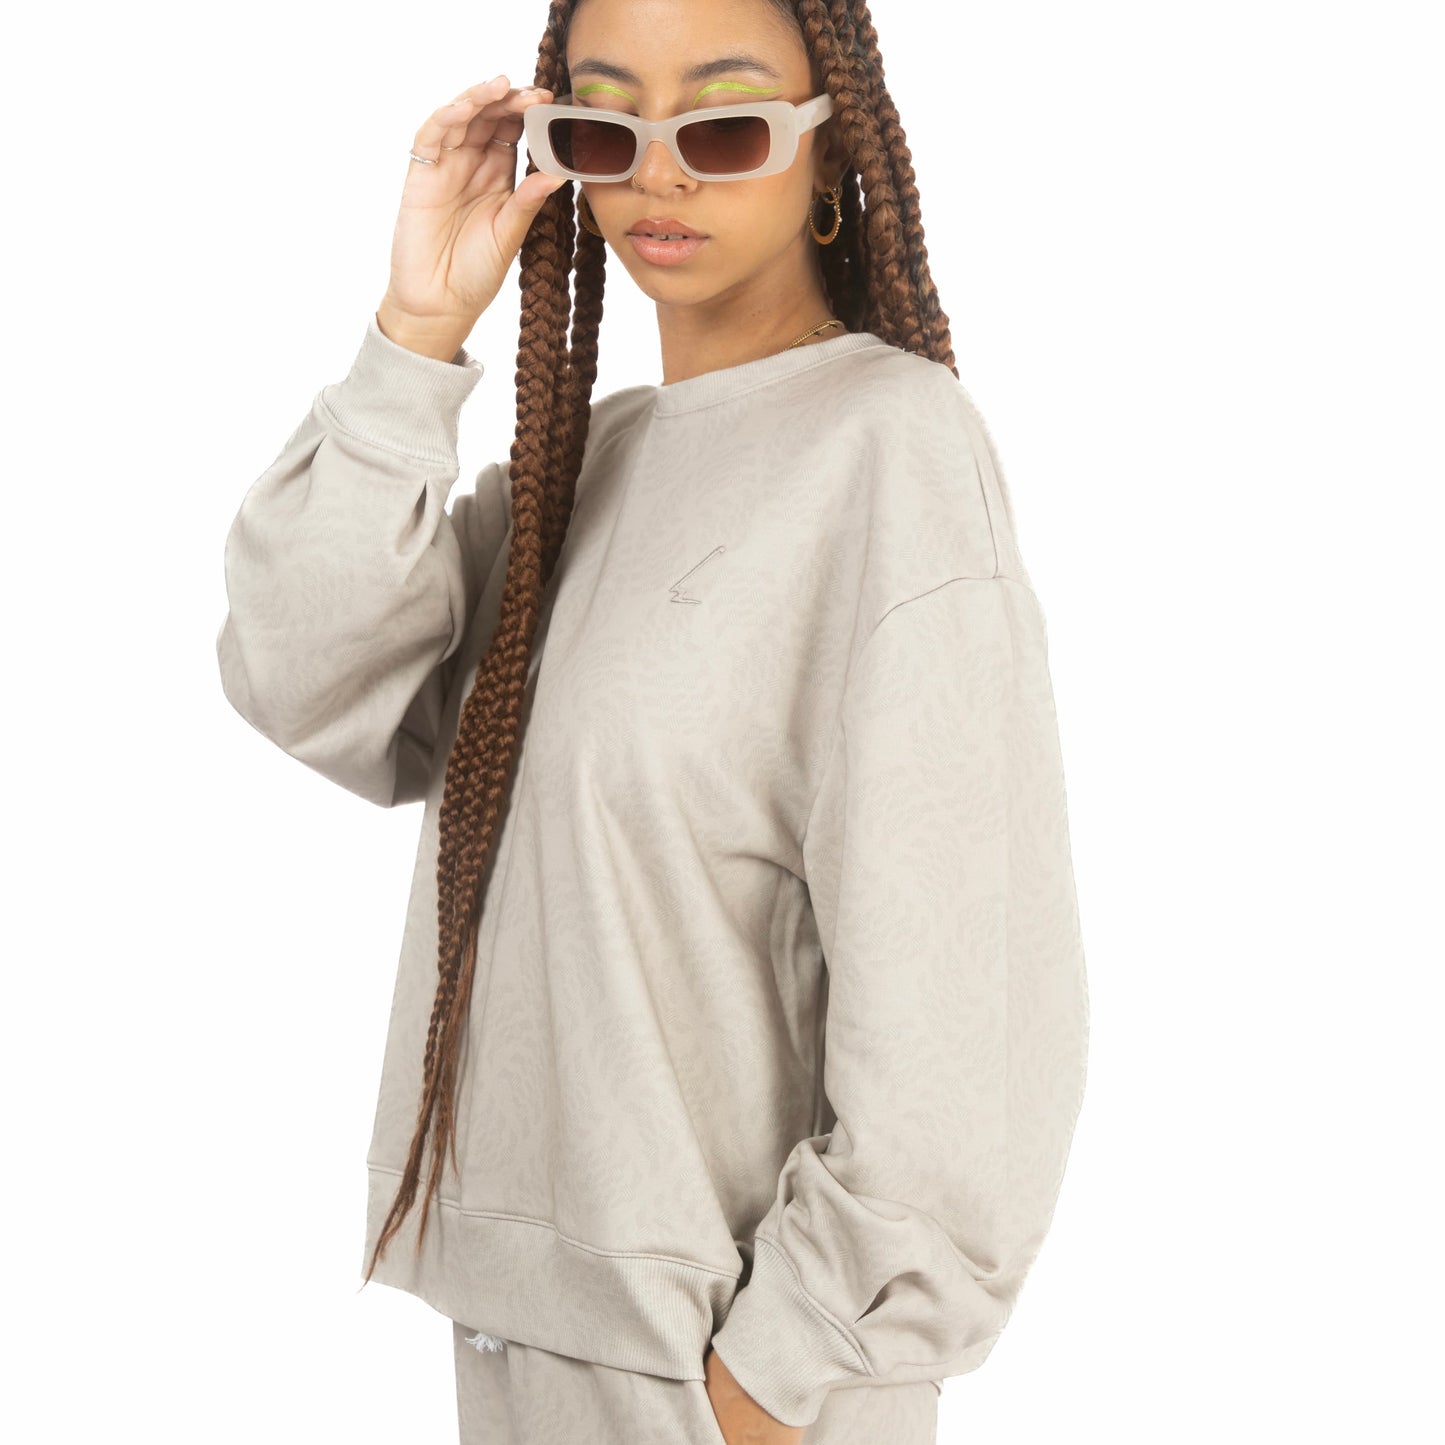 lucewear: femme portant un sweatshirt imprimé taupe